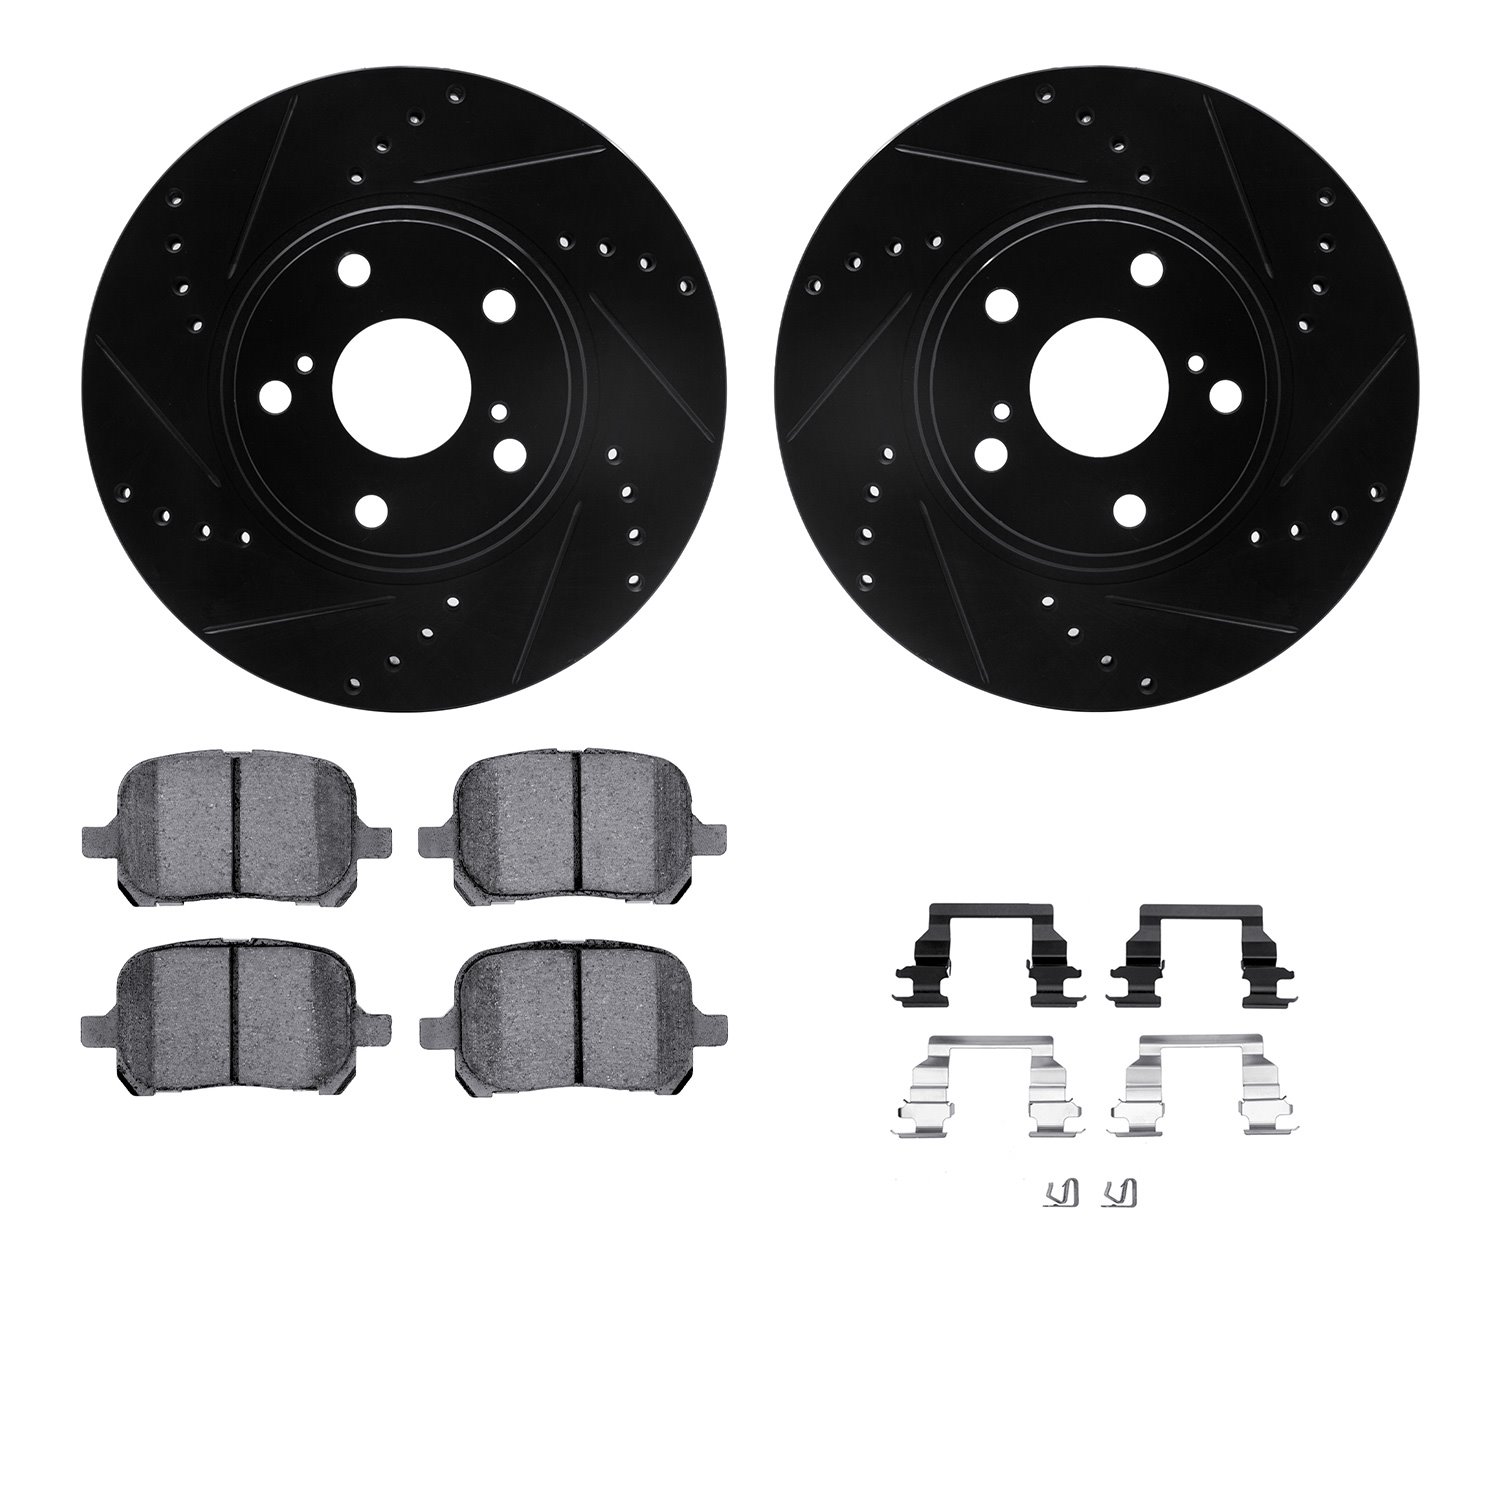 8312-76113 Drilled/Slotted Brake Rotors with 3000-Series Ceramic Brake Pads Kit & Hardware [Black], 1999-2001 Lexus/Toyota/Scion